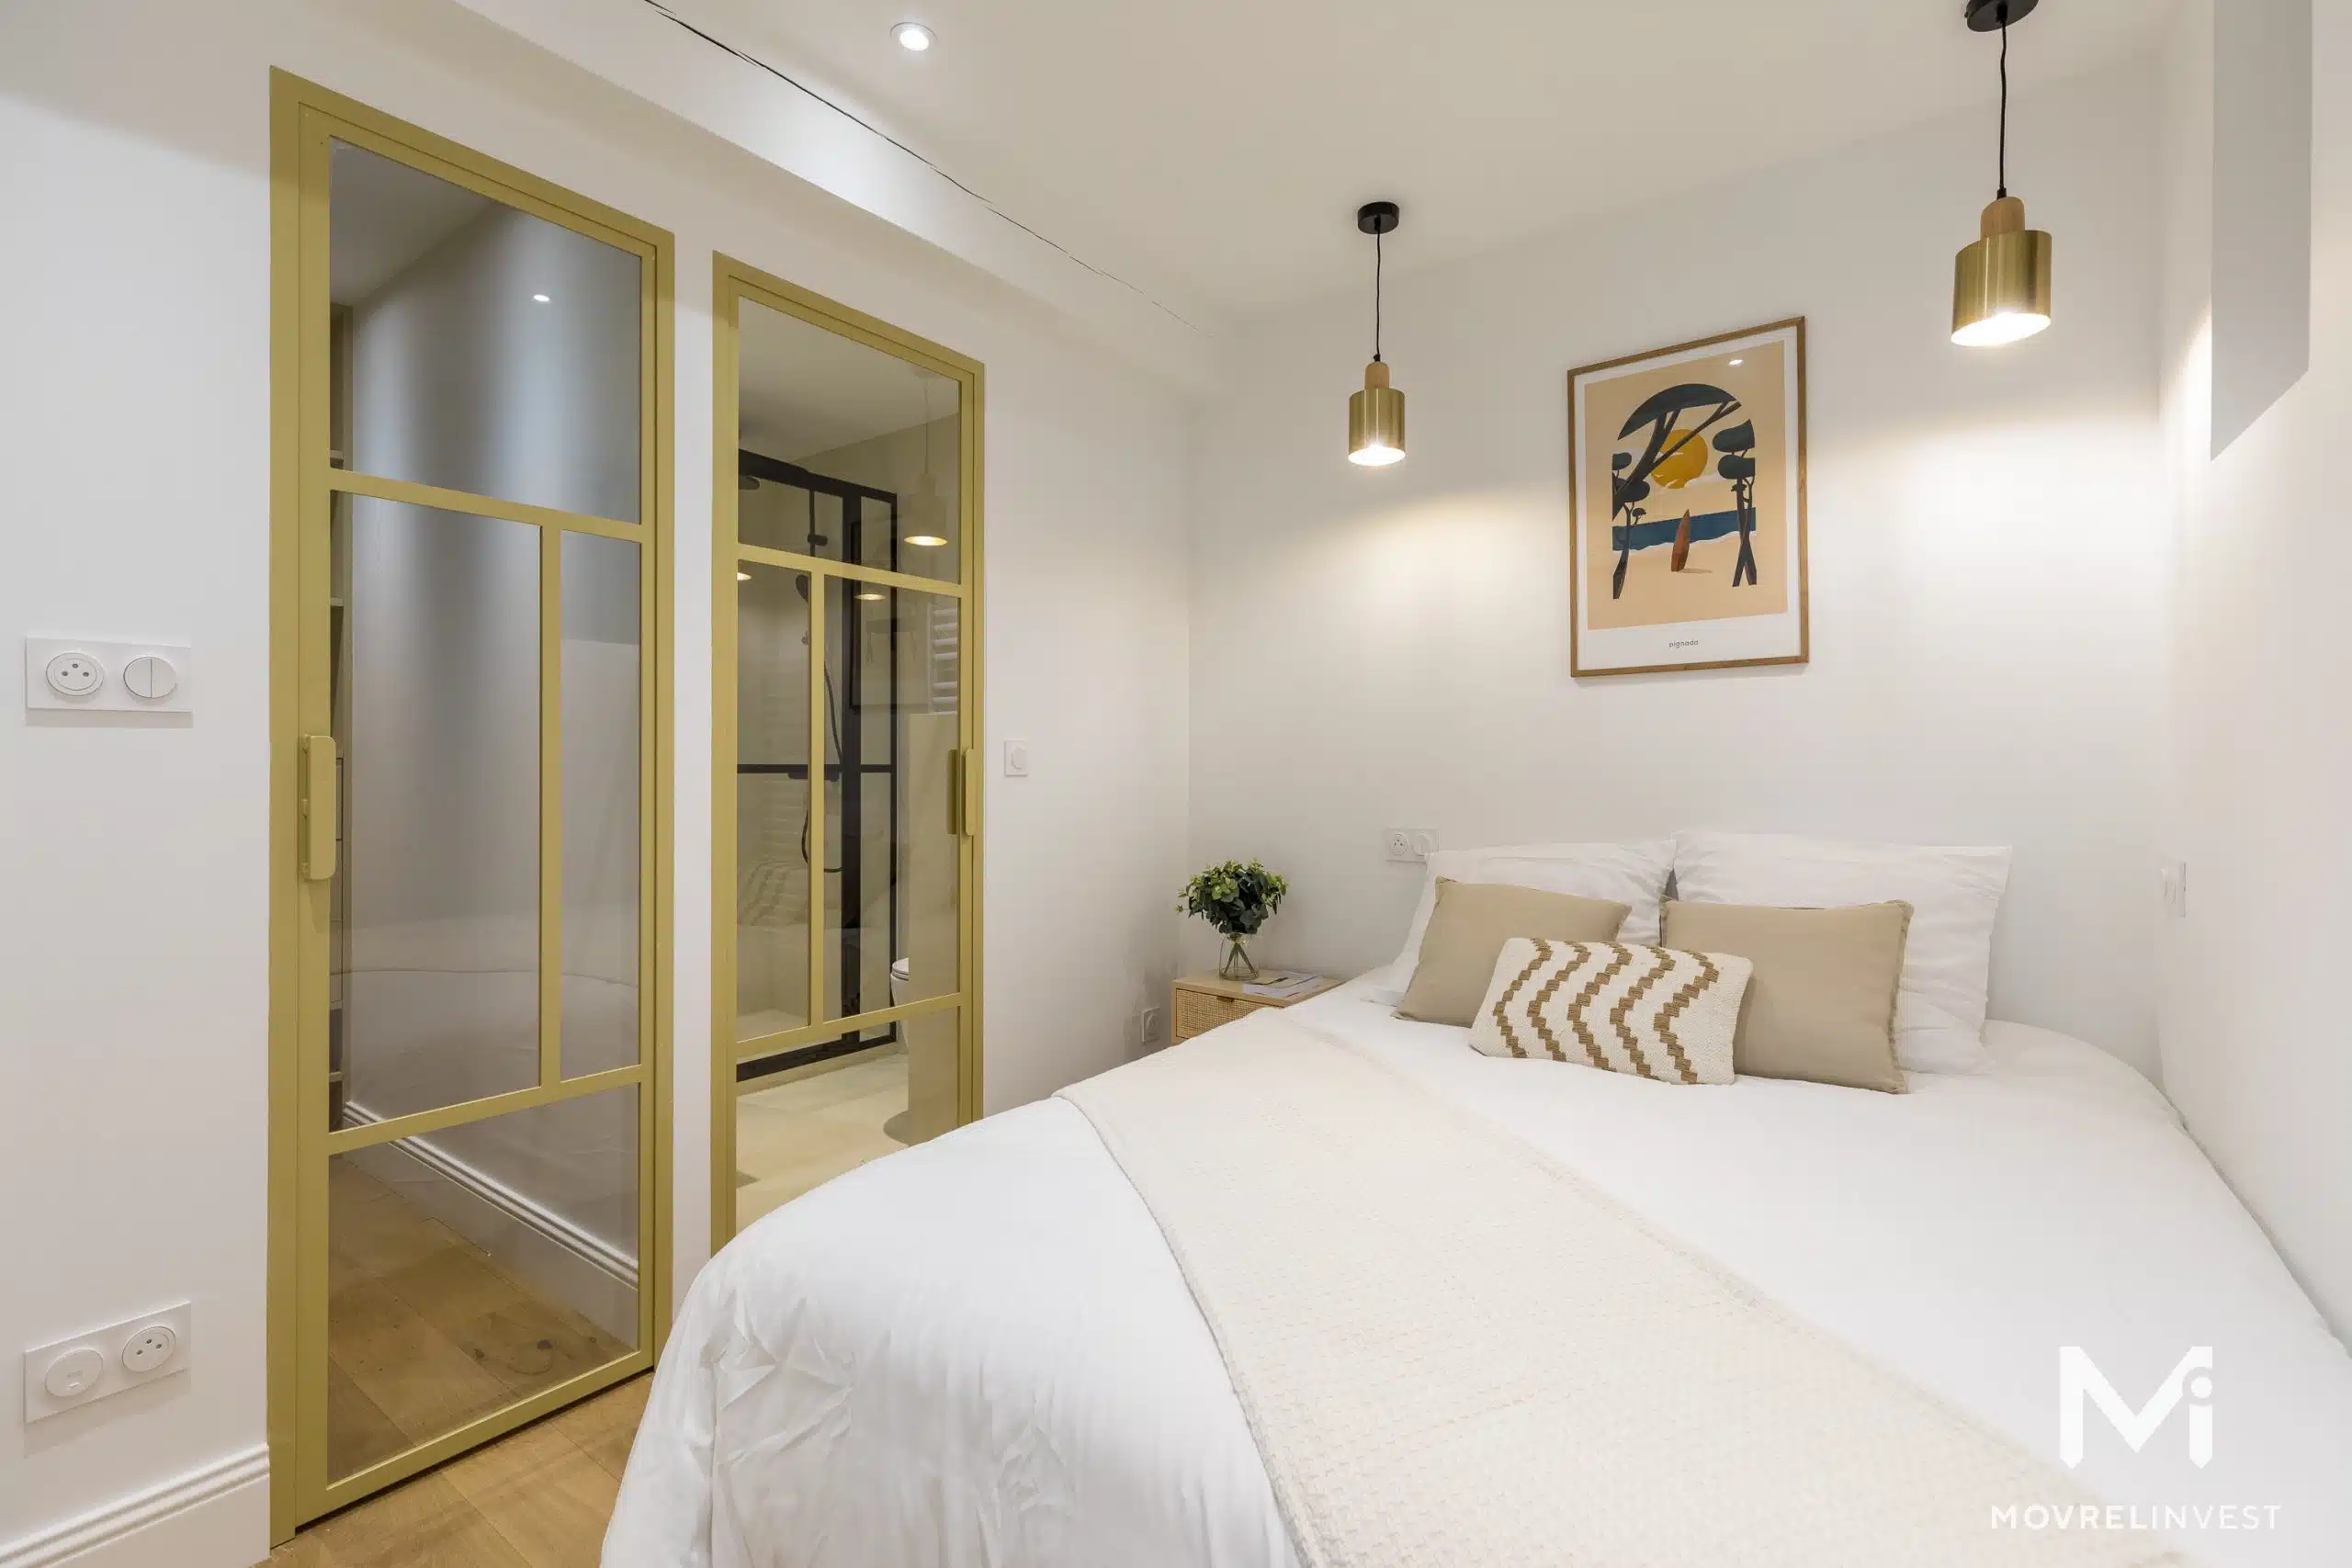 Chambre moderne avec lit double et décoration élégante.